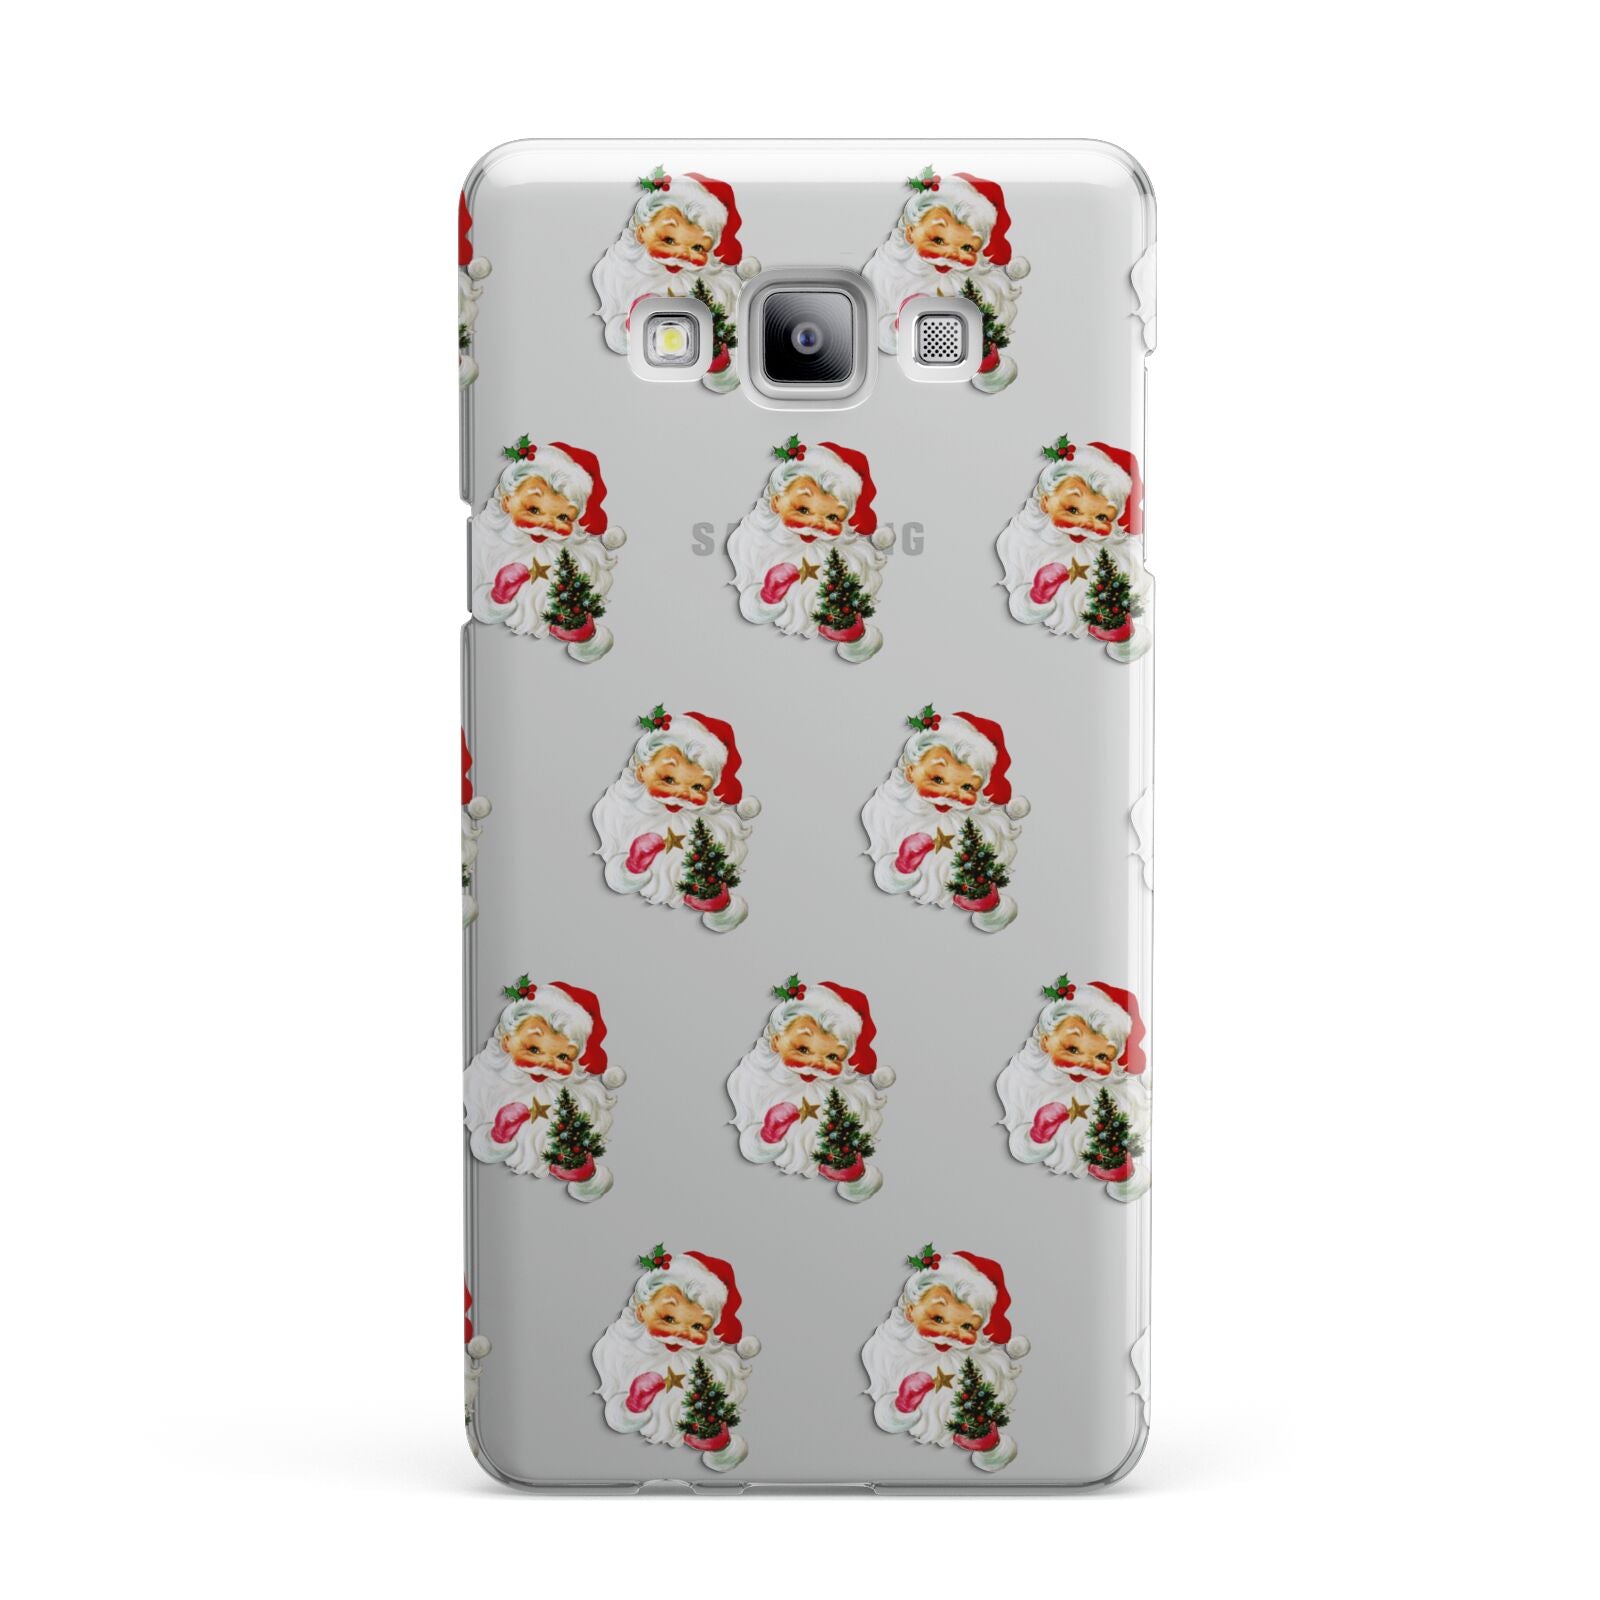 Retro Santa Face Samsung Galaxy A7 2015 Case